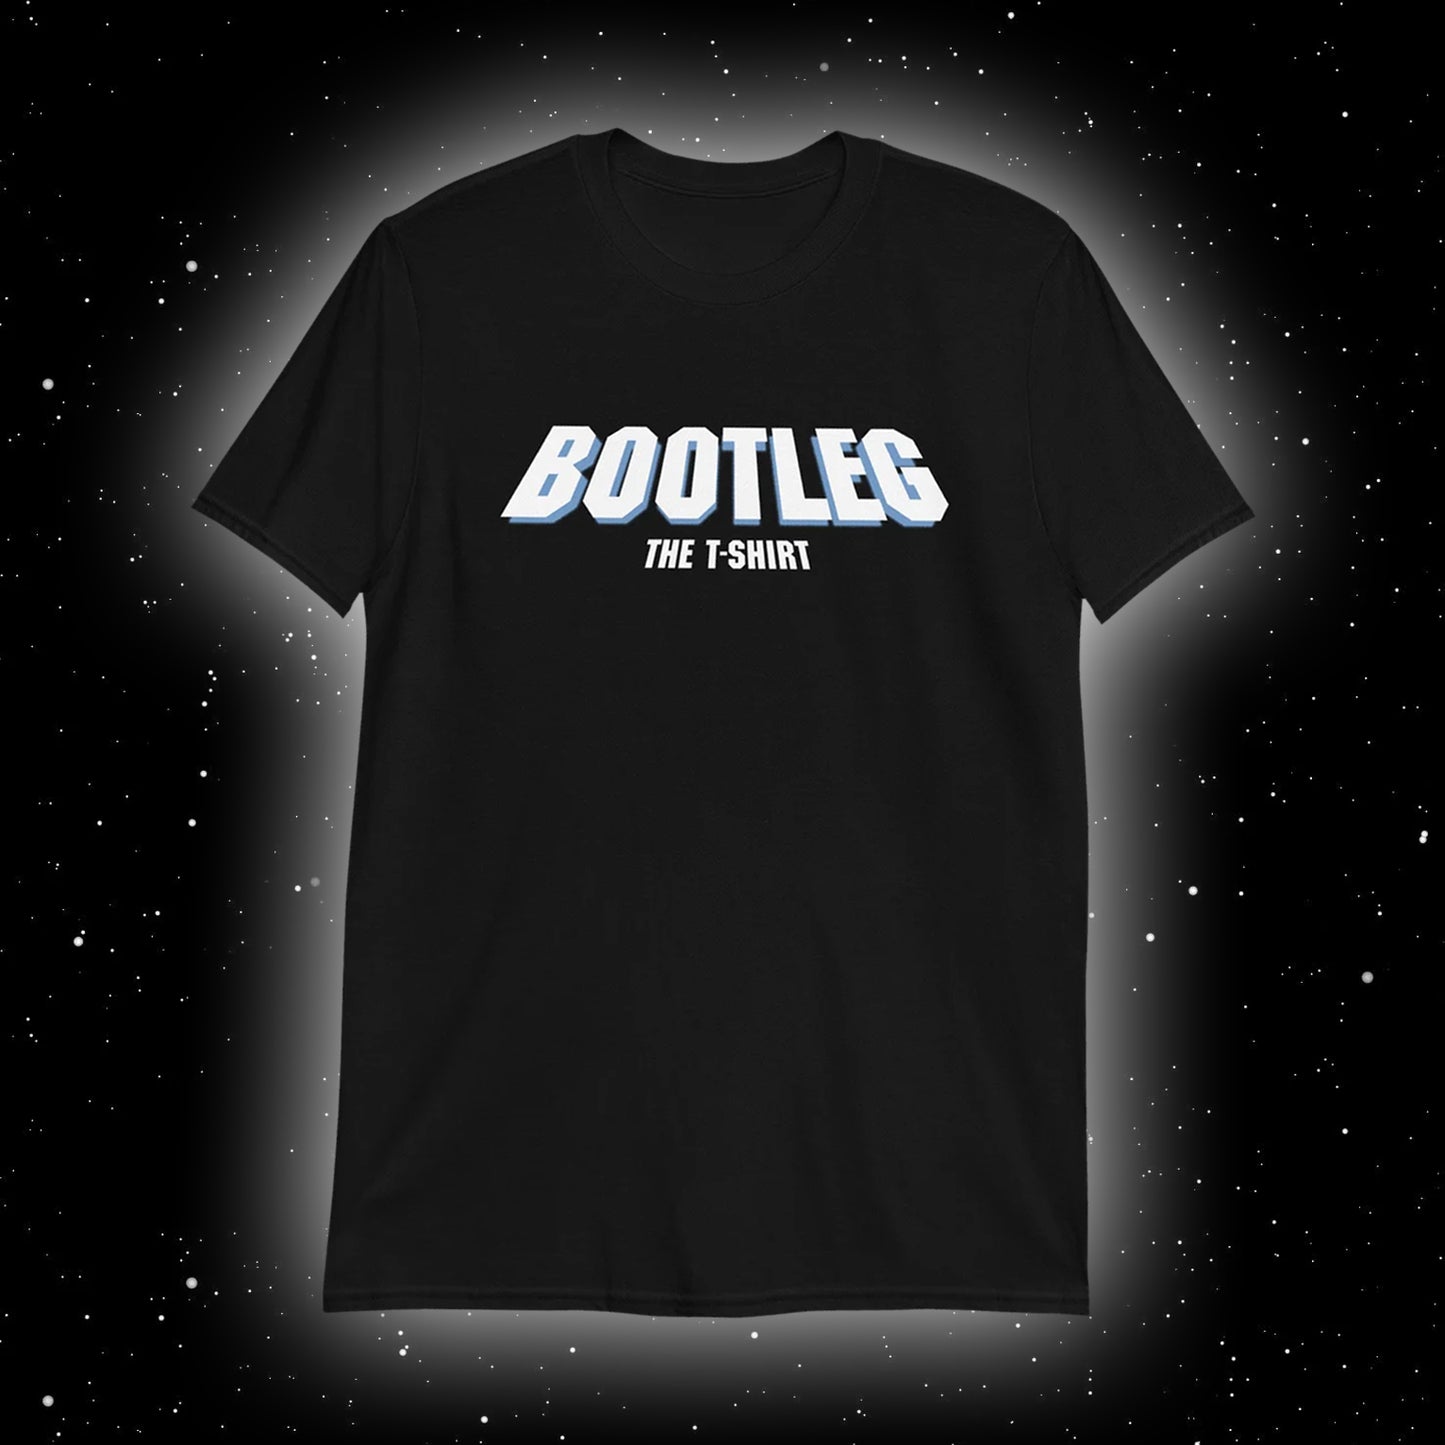 BOOTLEG the t-shirt